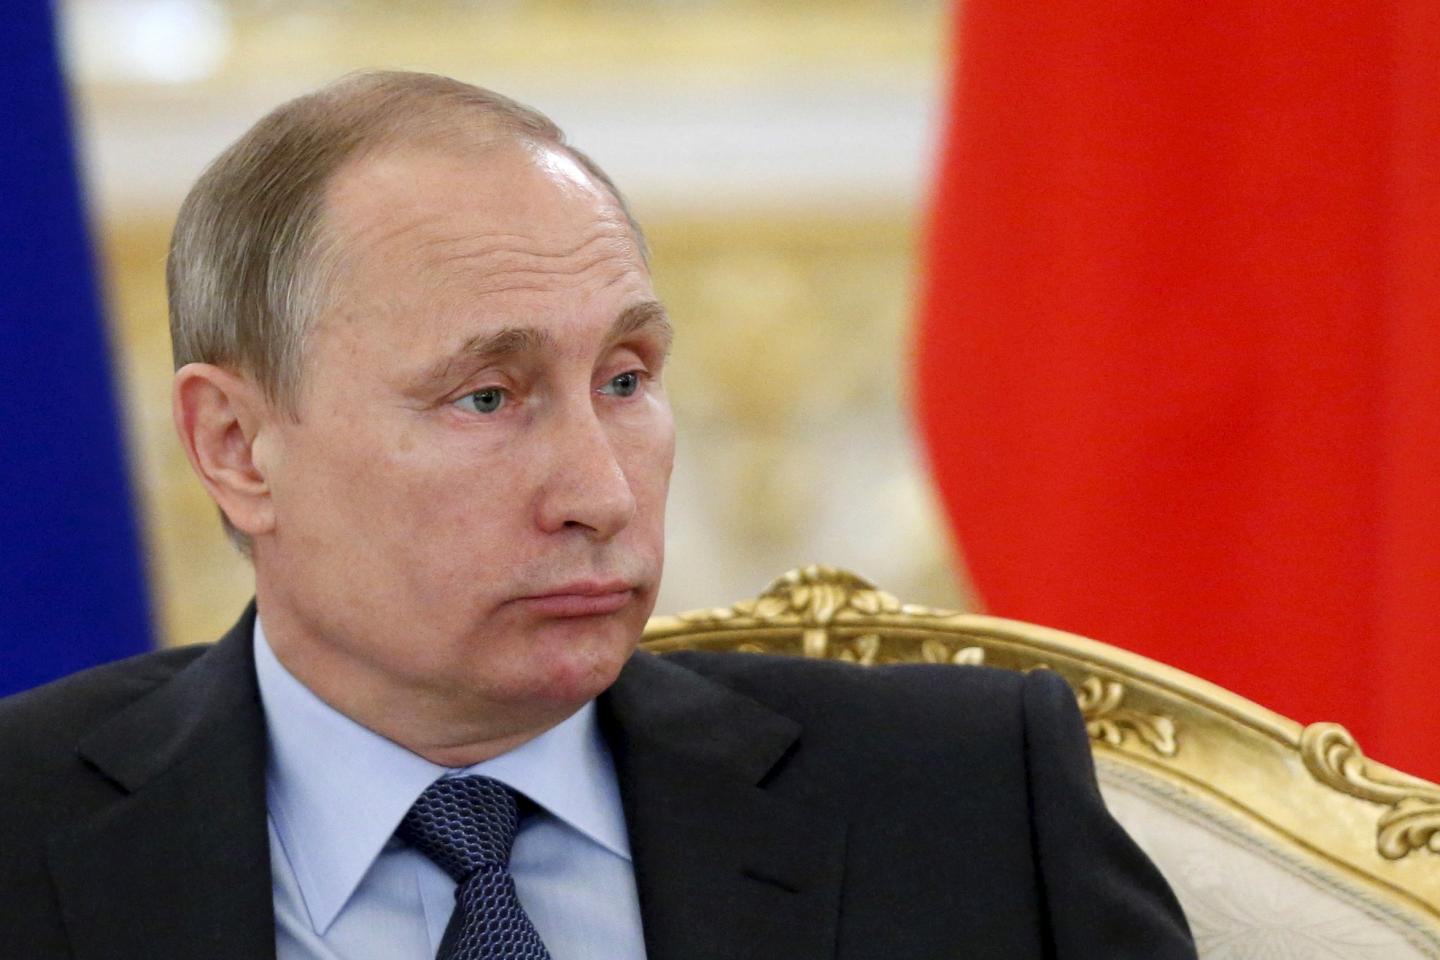 Ловушка демагогии: как Путин крепко попал в собственно расставленный капкан